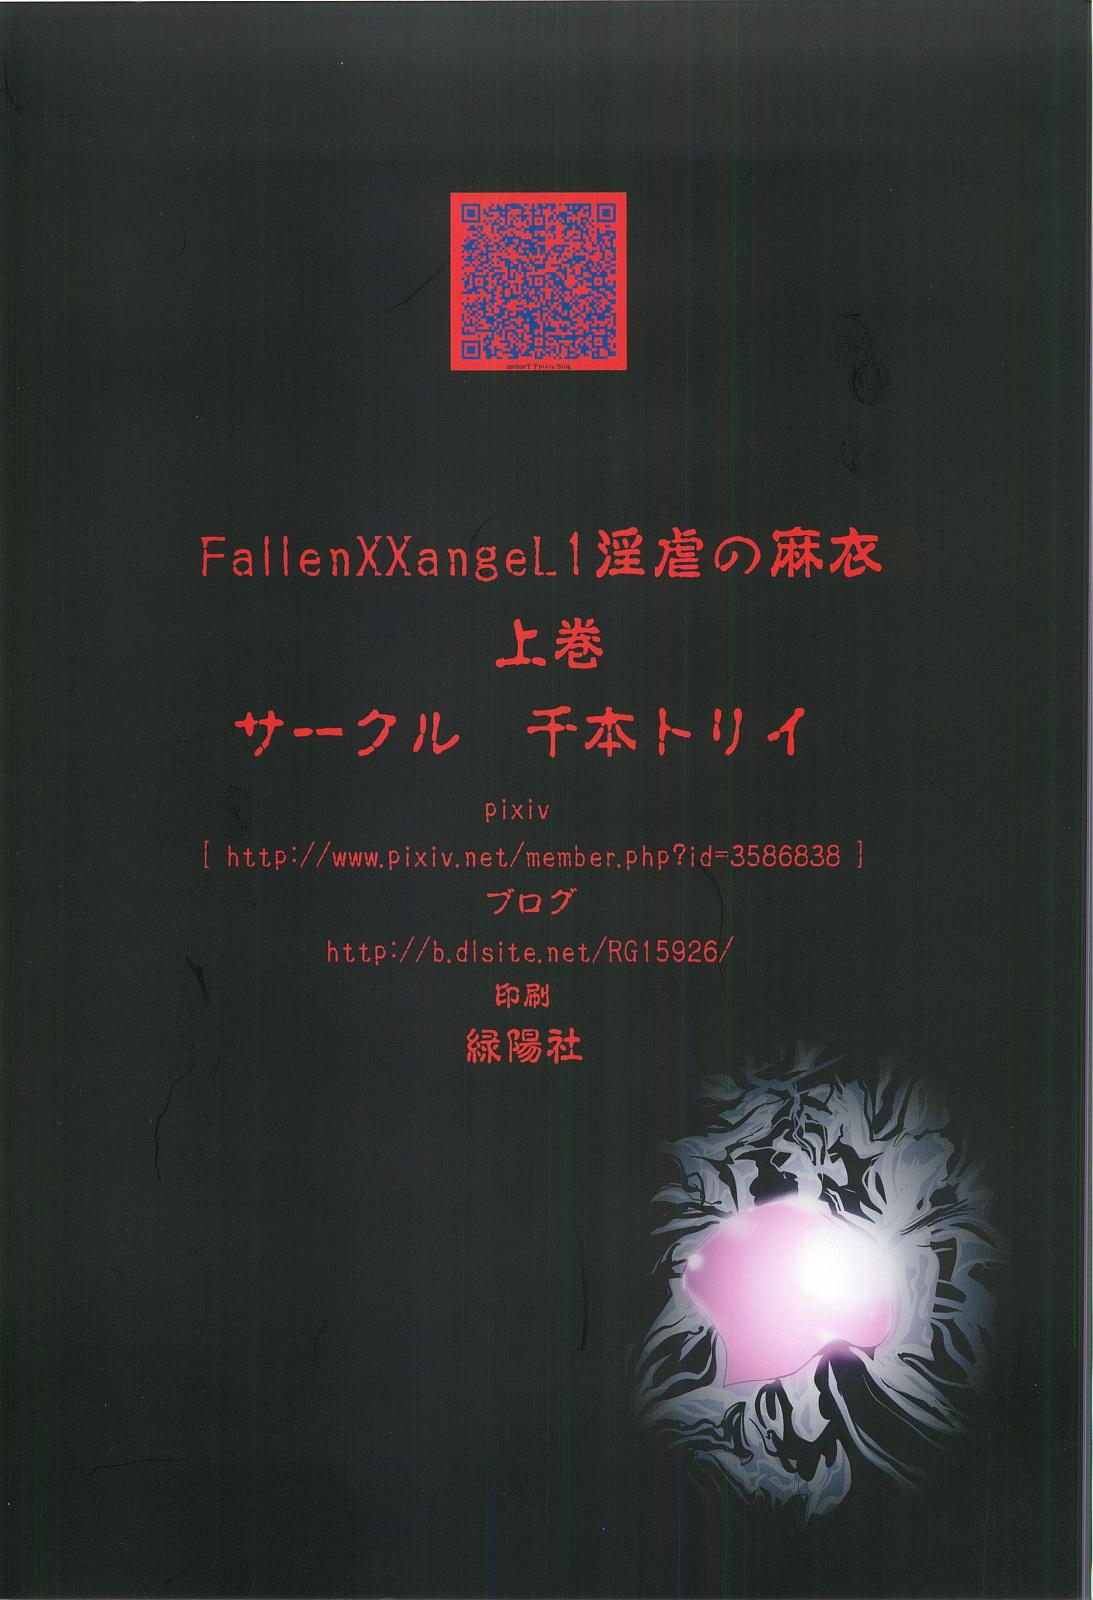 FallenXXangeL 1 Ingyaku no Mai Joukan 33